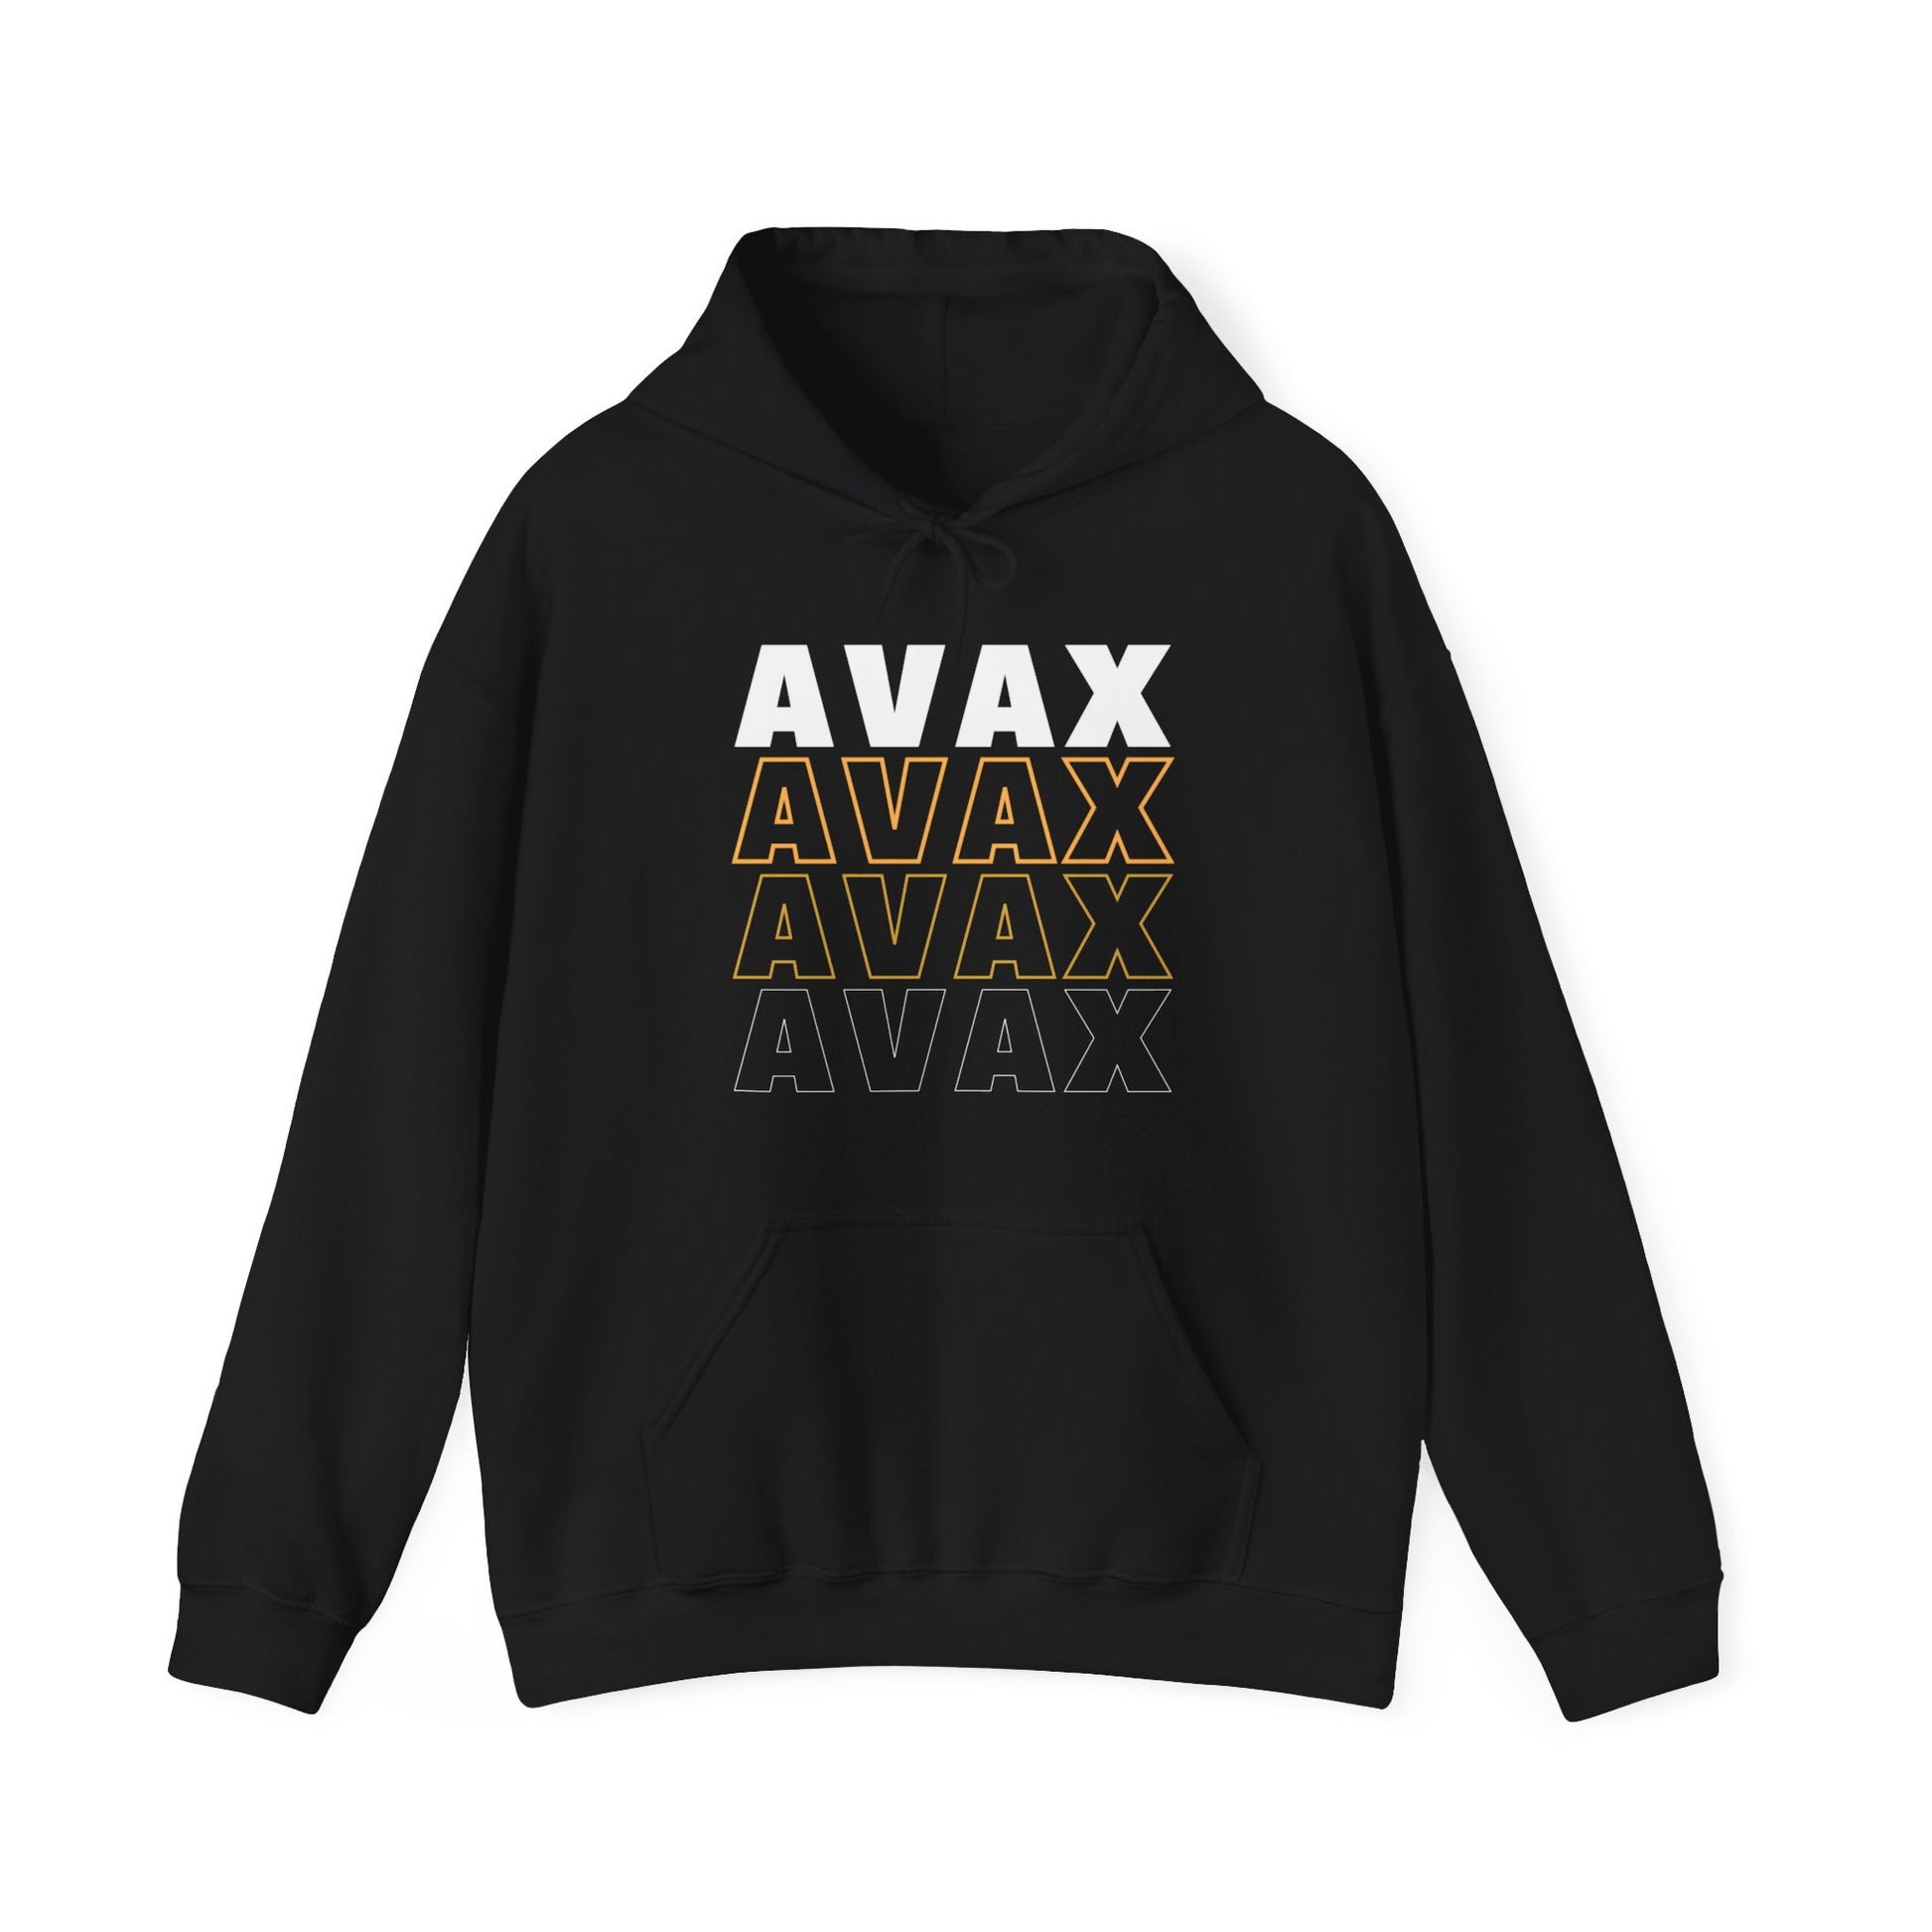 AVAX AVAX AVAX AVAX Hoodie